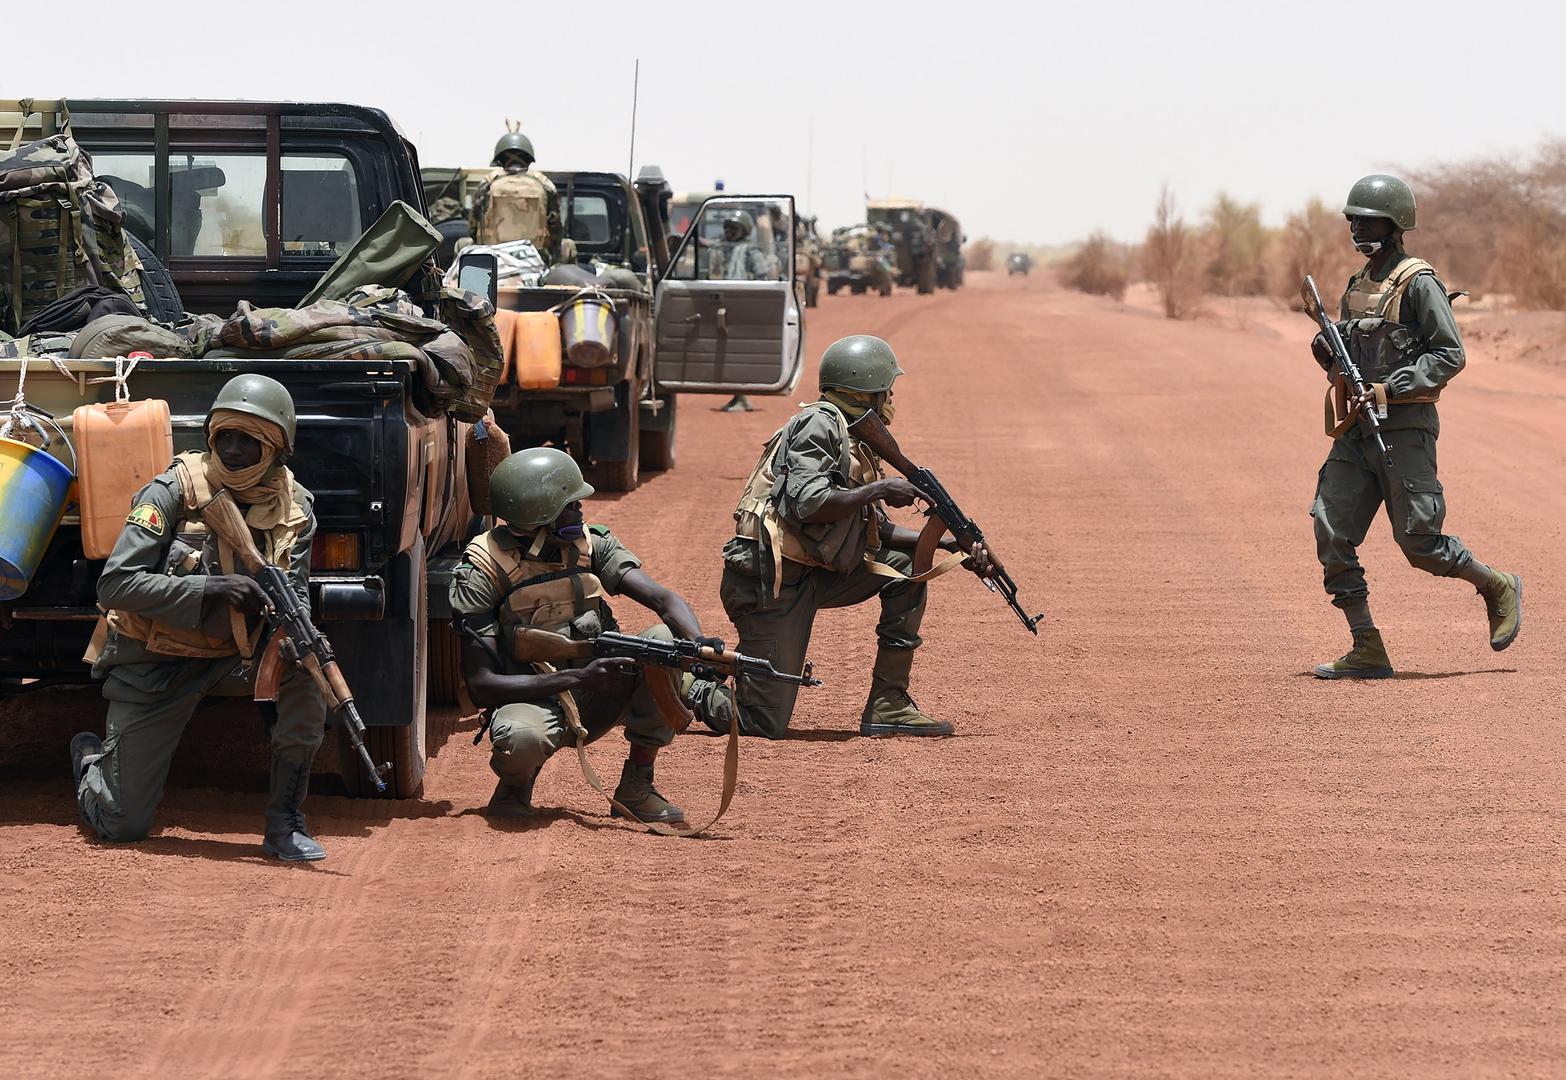 Les forces armées maliennes sécurisent une route entre Goundam et Tombouctou, dans le nord du Mali, le 2 juin 2015, dans le cadre d'une opération antiterroriste au Sahel. Les attaques perpétrées par des groupes islamistes armés depuis 2015 se sont étendue